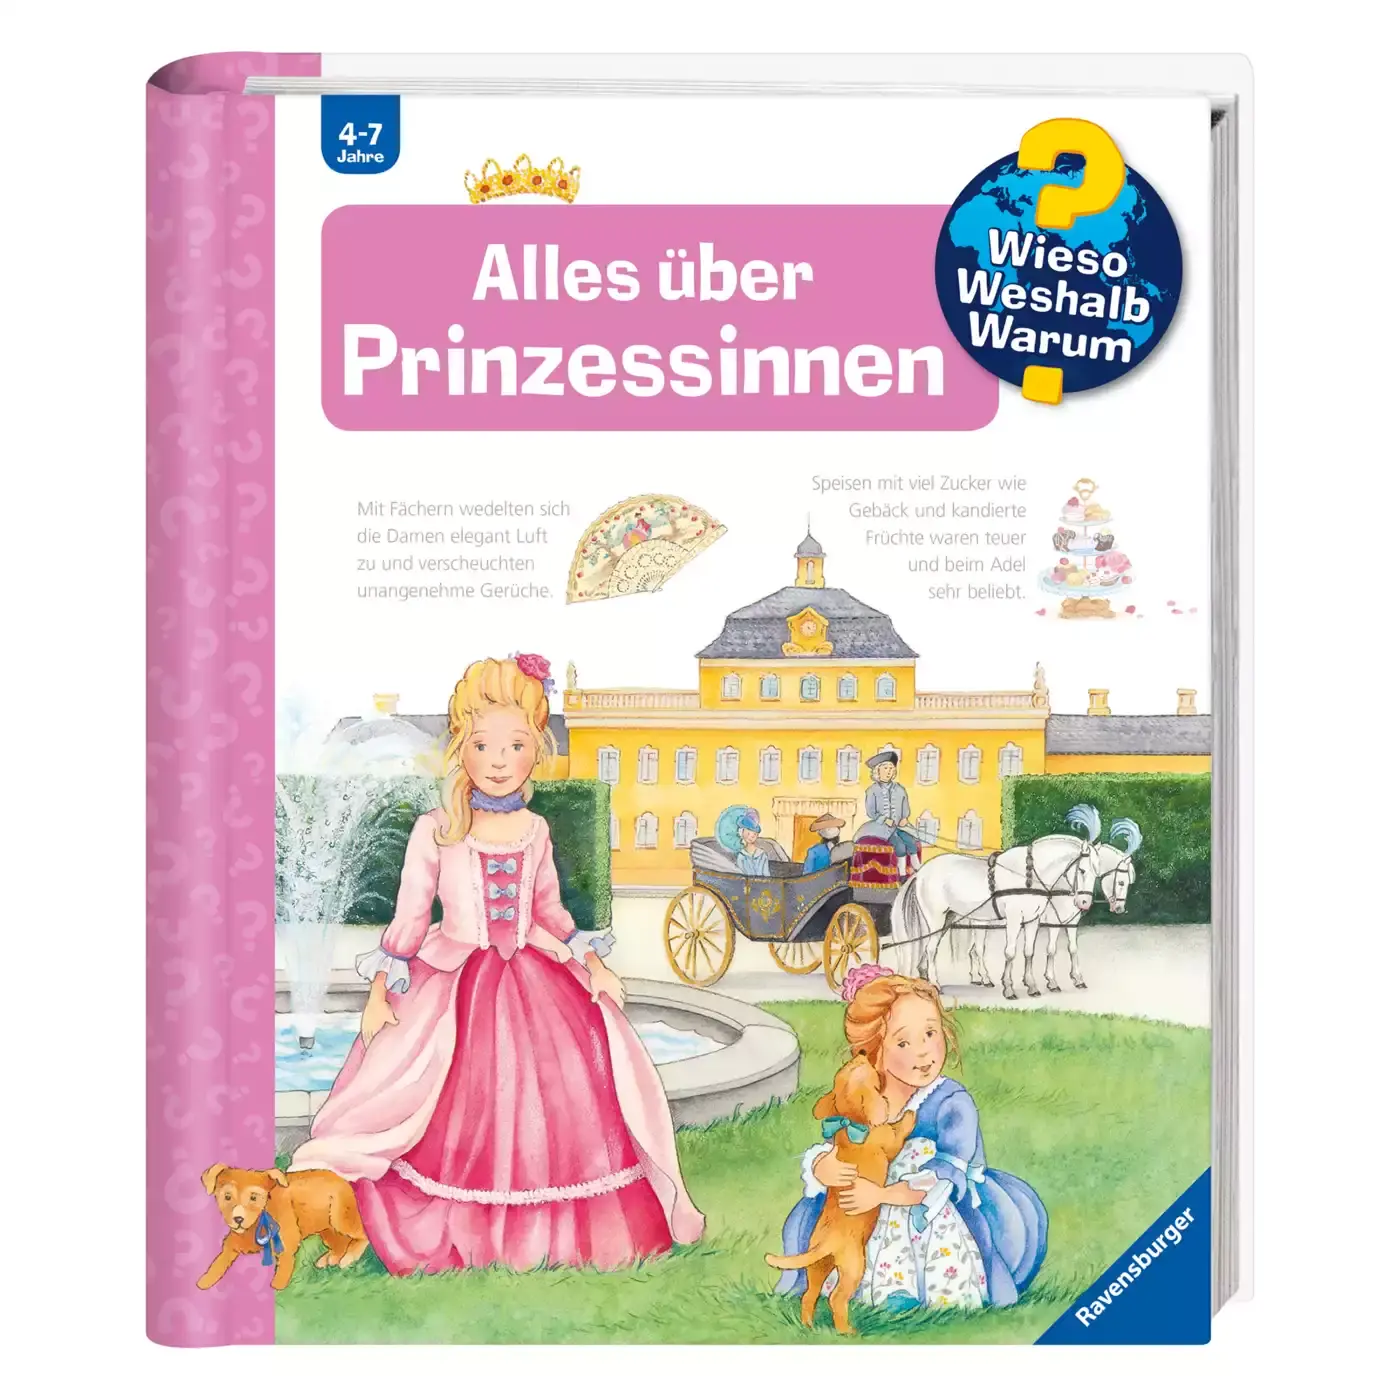 WWW Alles über Prinzessinnen Ravensburger 2000563527202 1